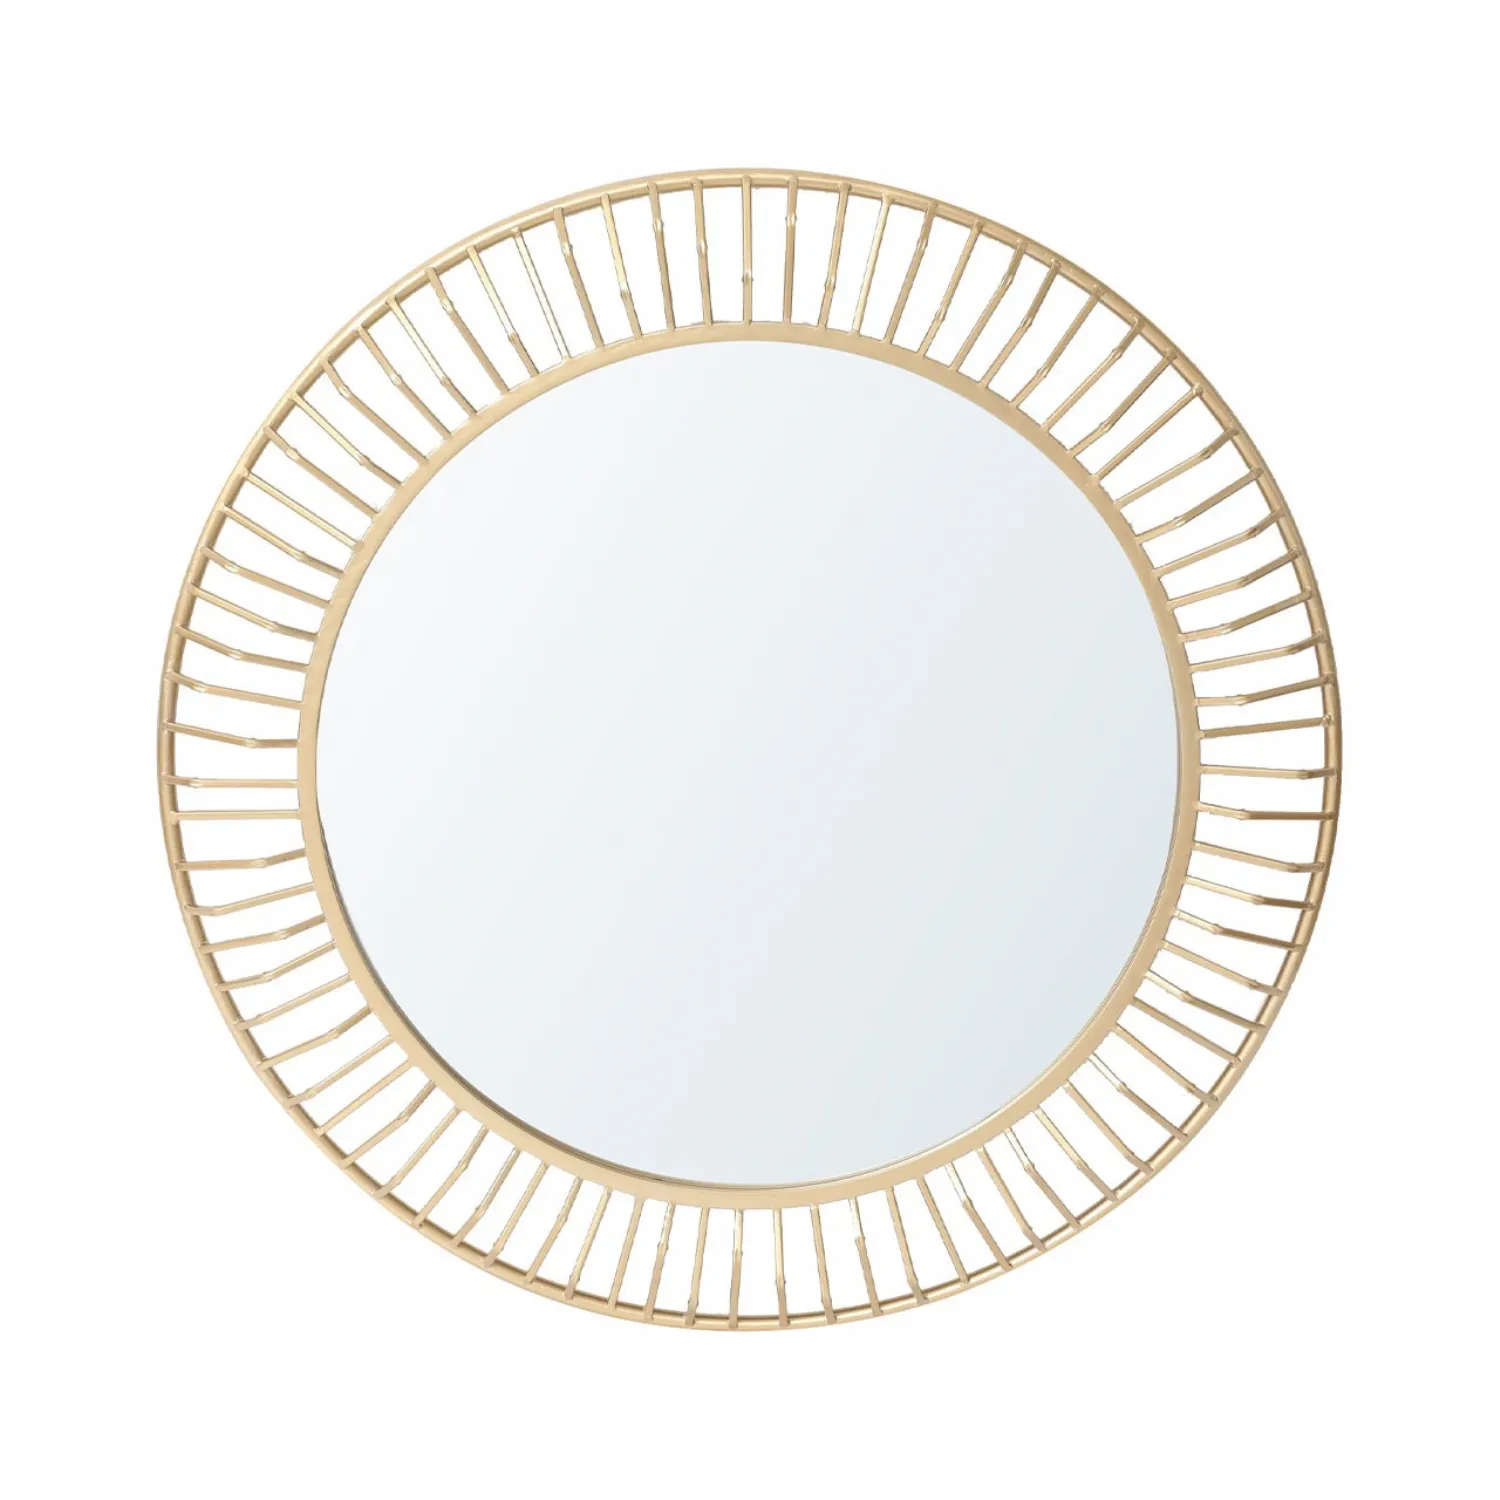 81. 3cm Gold Round Wall Mirror